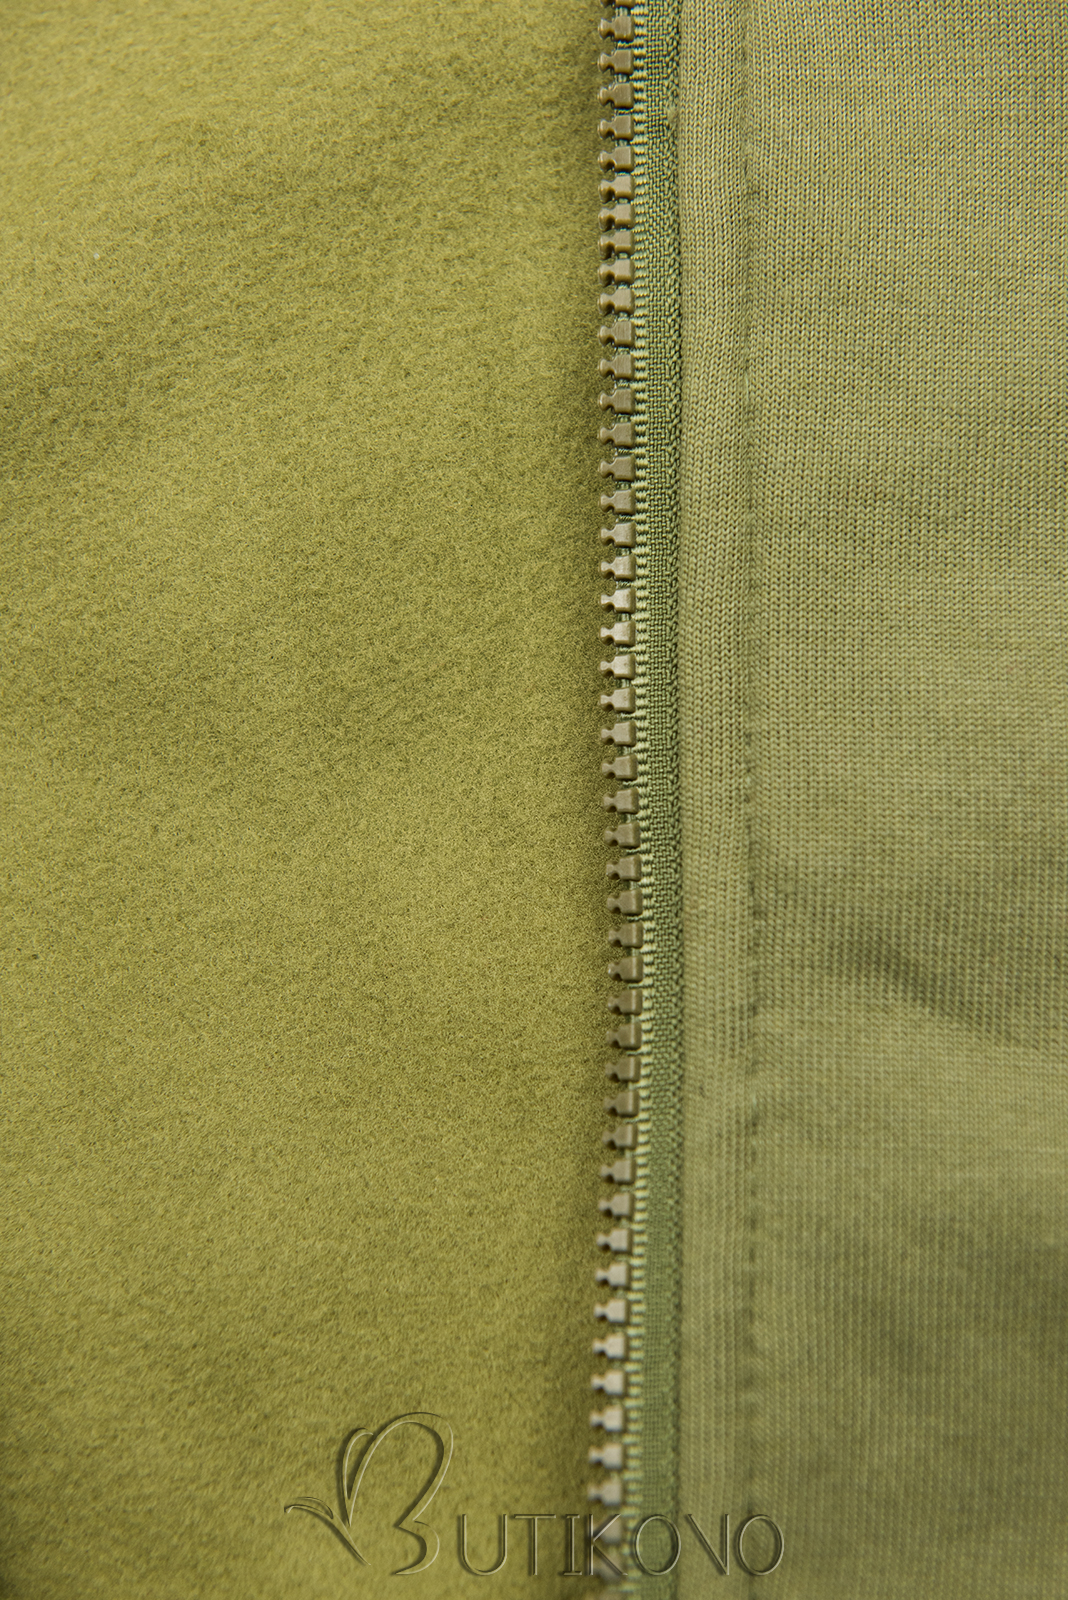 Khaki prodloužená mikina s barevnou podšívkou